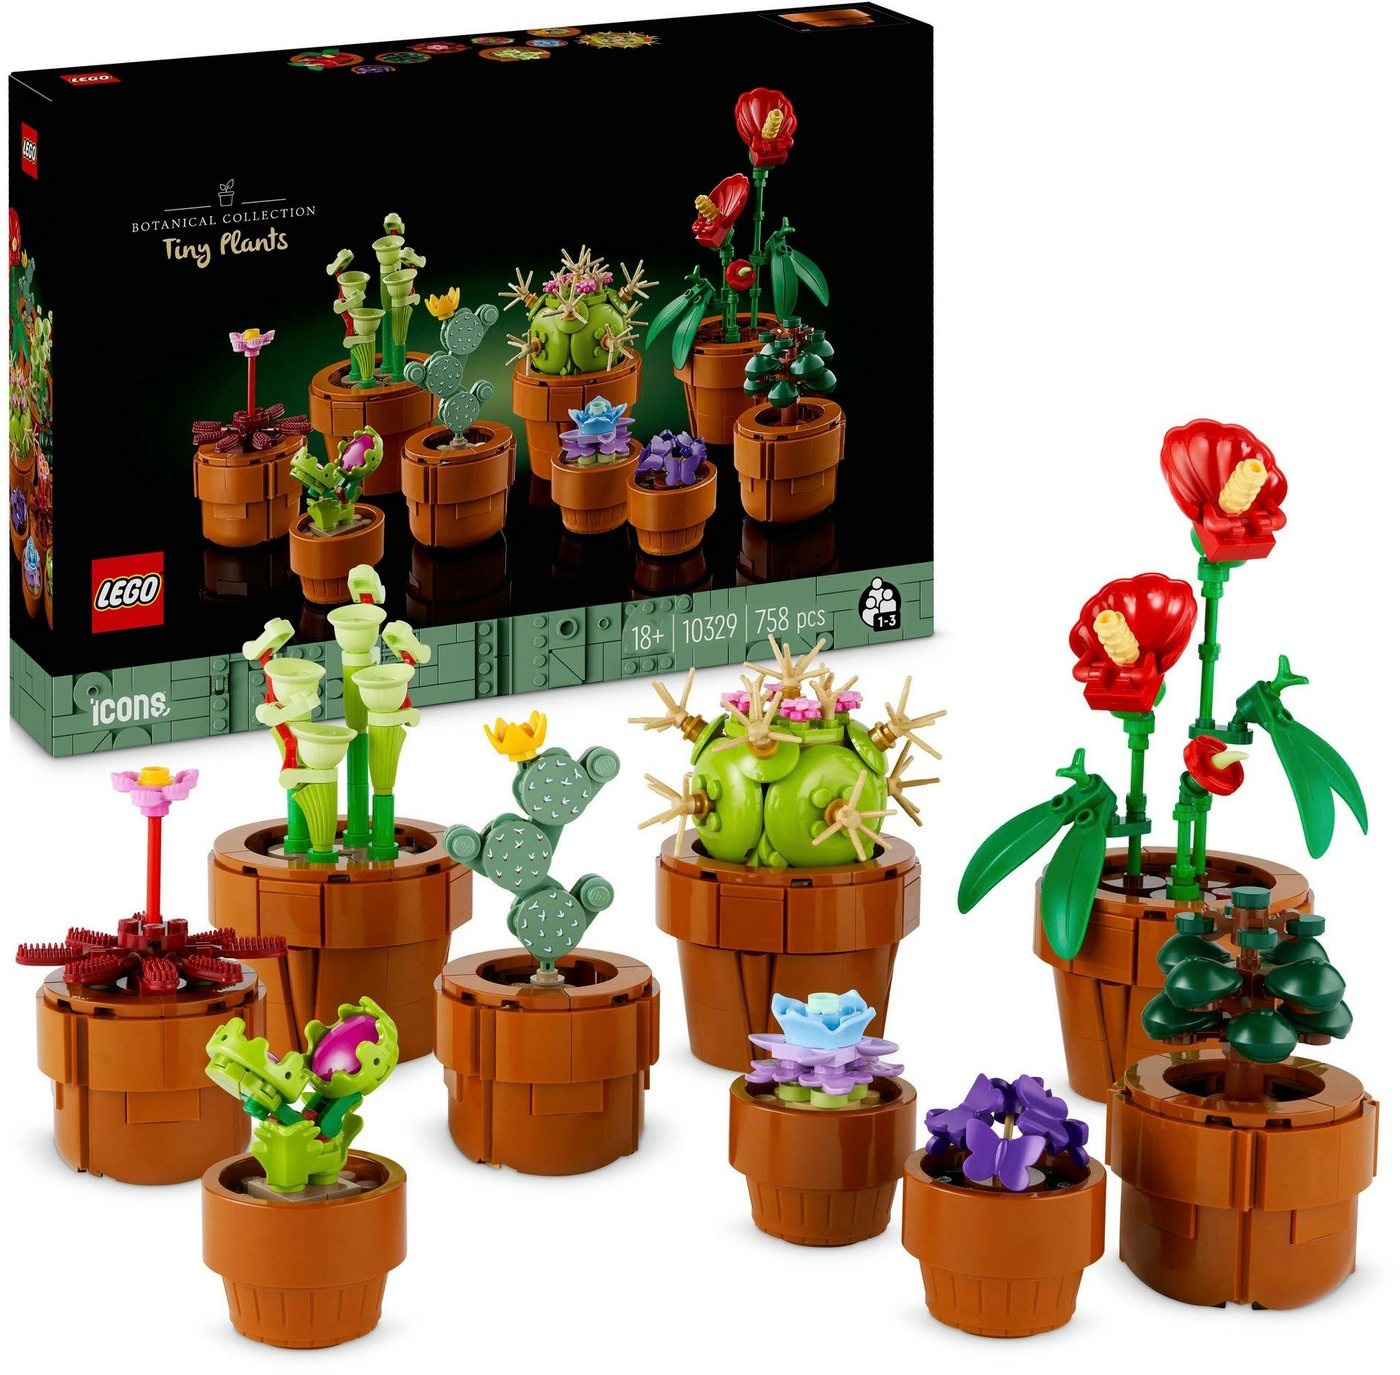 LEGO® Konstruktionsspielsteine Mini Pflanzen (10329), LEGO Icons, (758 St), Made in Europe bunt